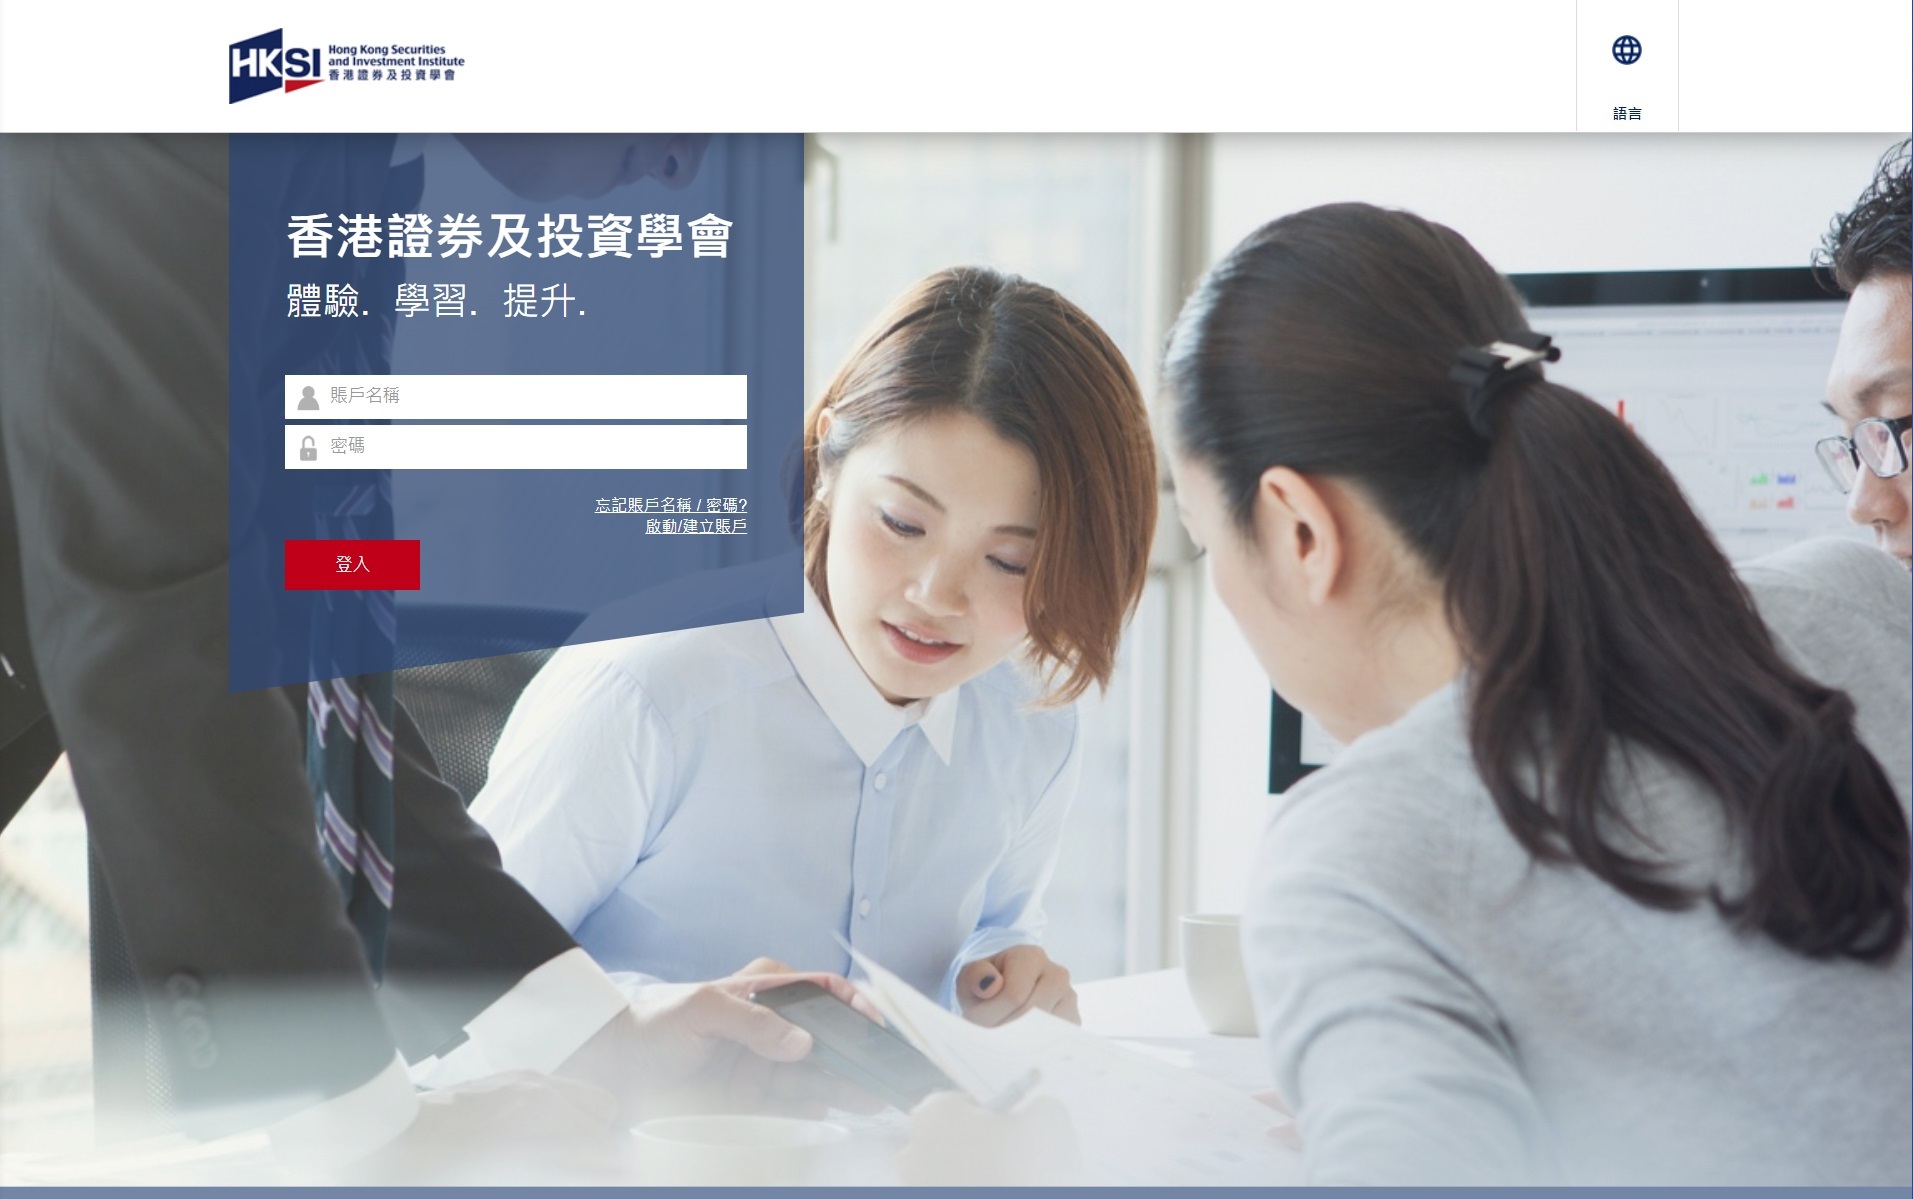 這是香港證券及投資學會HKSI 的網頁的截圖。